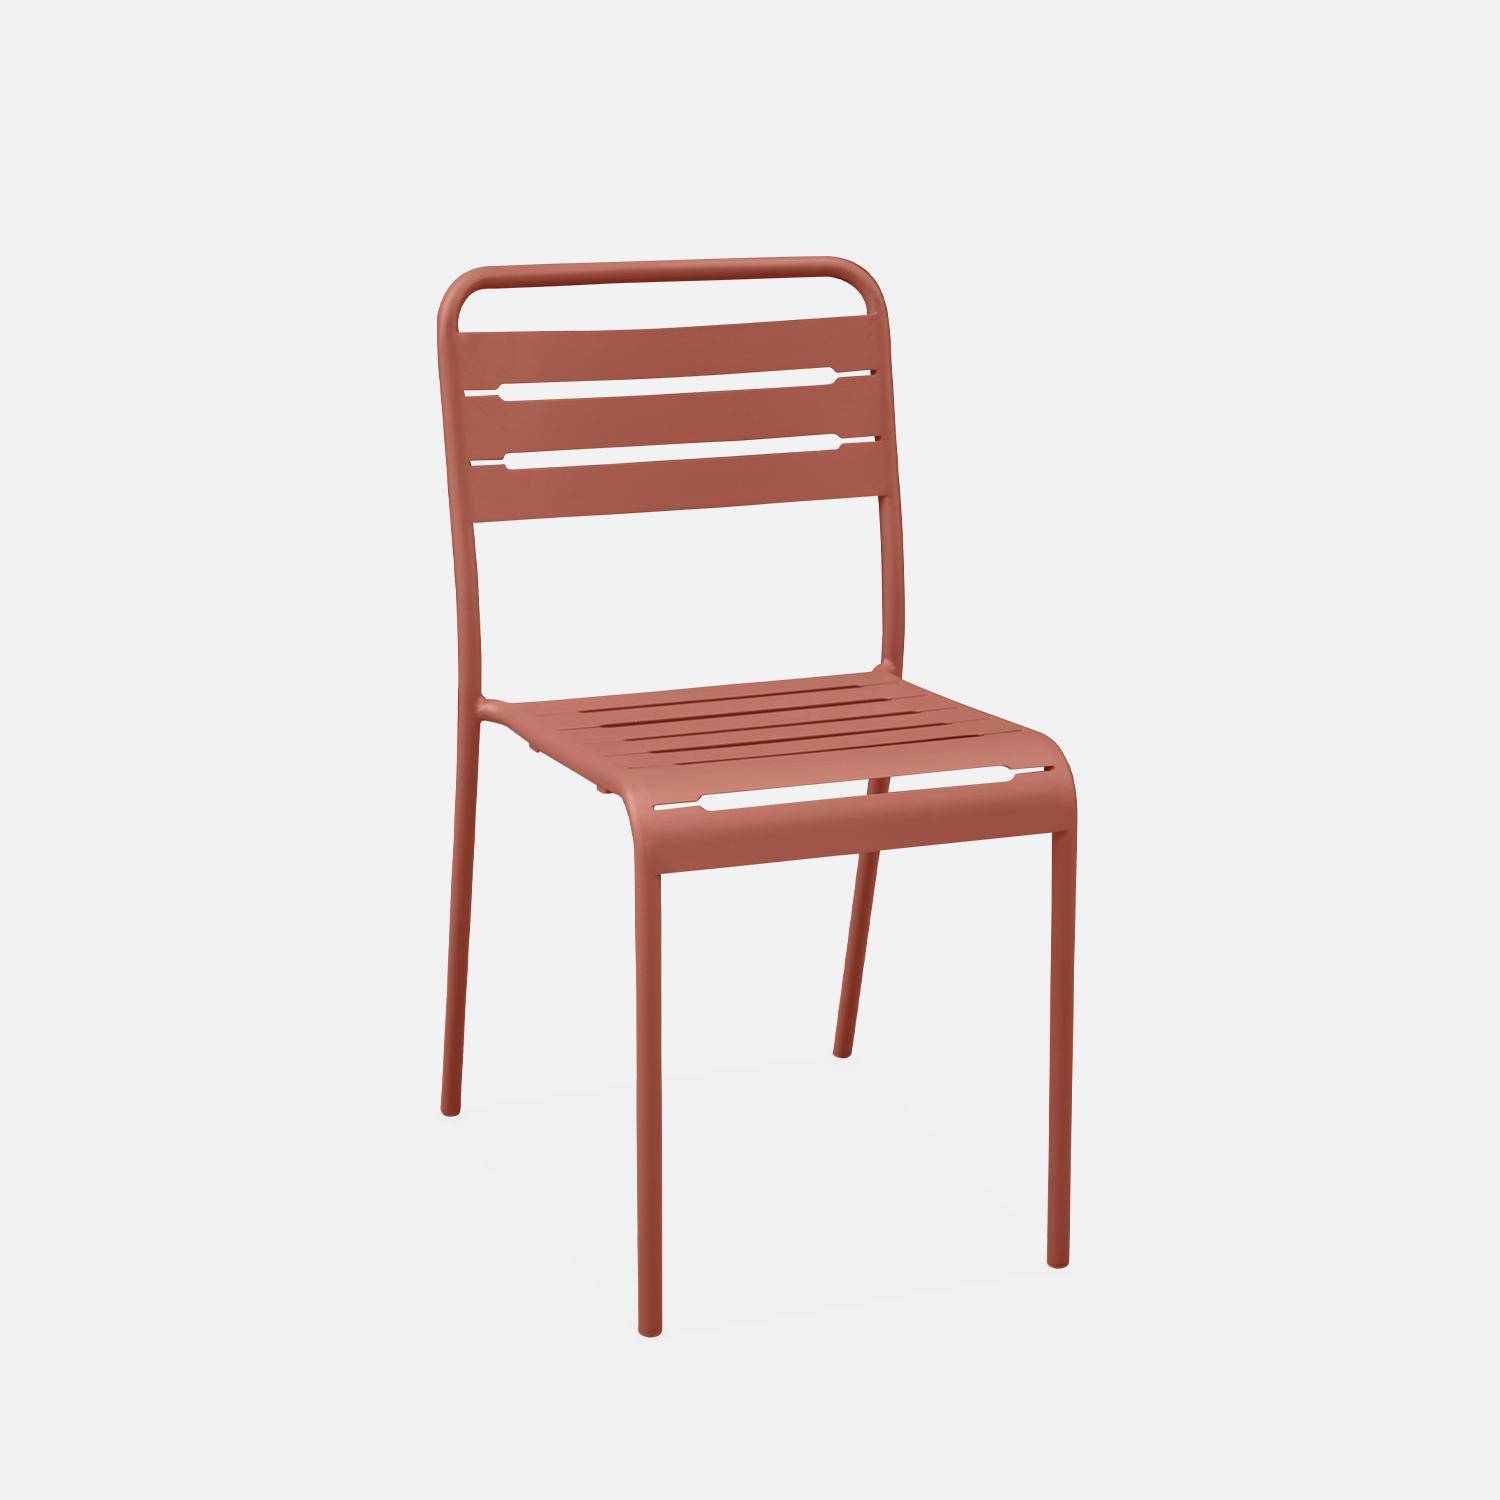 Amélia terracotta metalen tuintafel met 2 stoelen, latten en afgeronde hoeken, roestbestendige afwerking Photo7